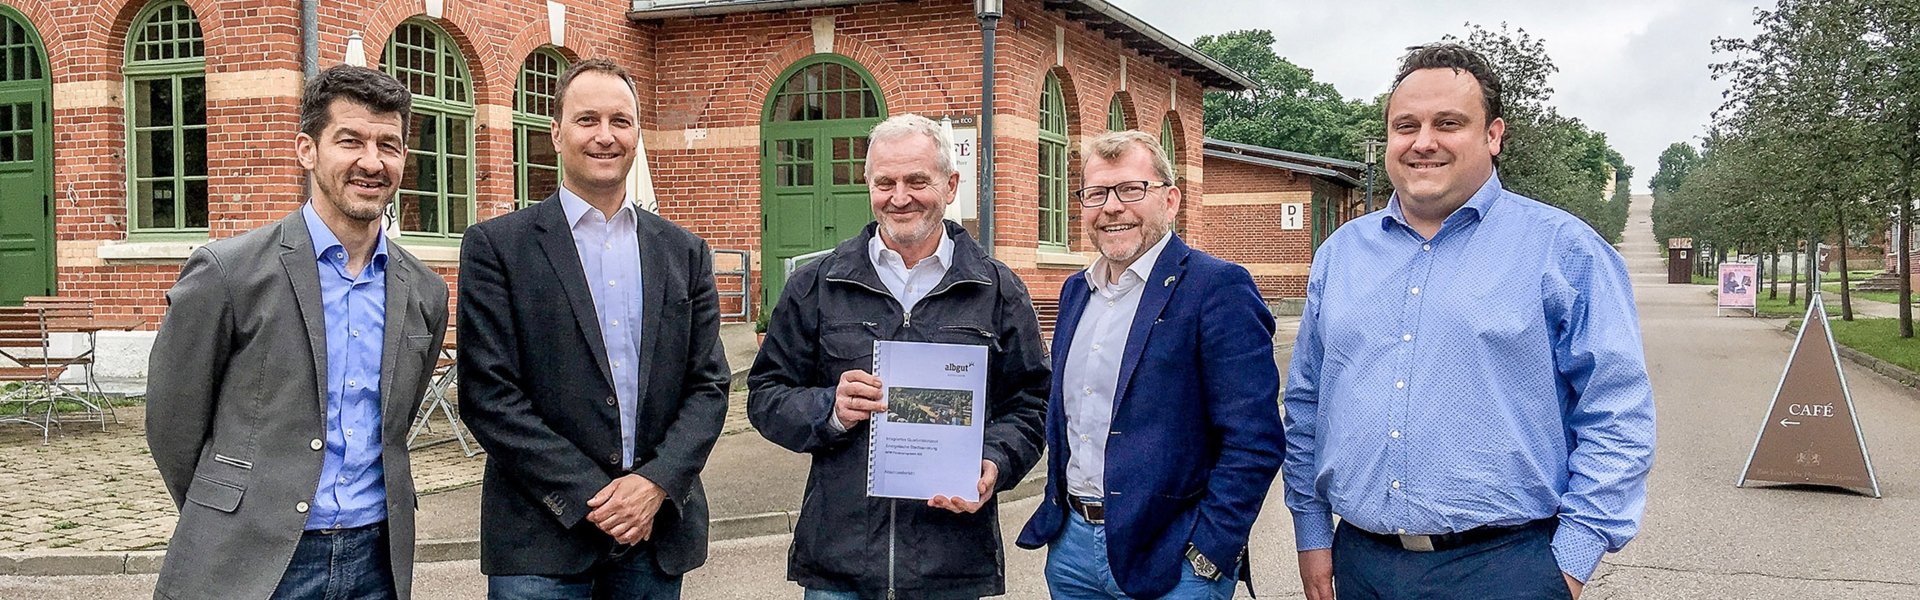 Großprojekt Altes Lager in Münsingen: Franz Tress mit dem energetischen Quartierskonzept der Erdgas Südwest GmbH